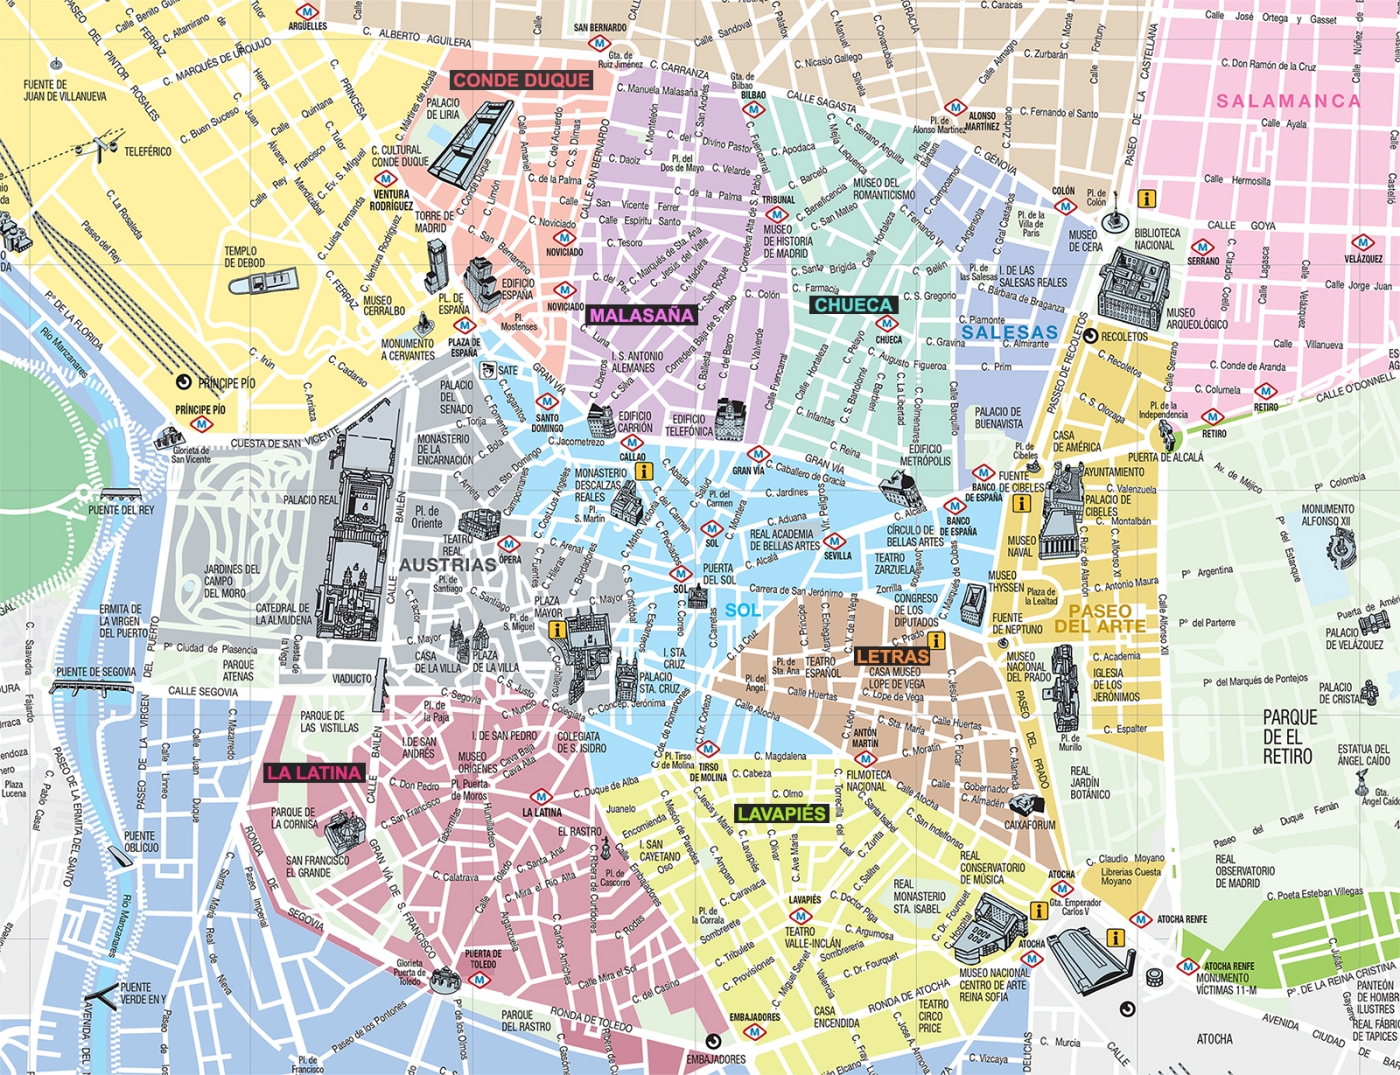 Mapa de Madrid - Mapa turístico y guía útil de ciudad de